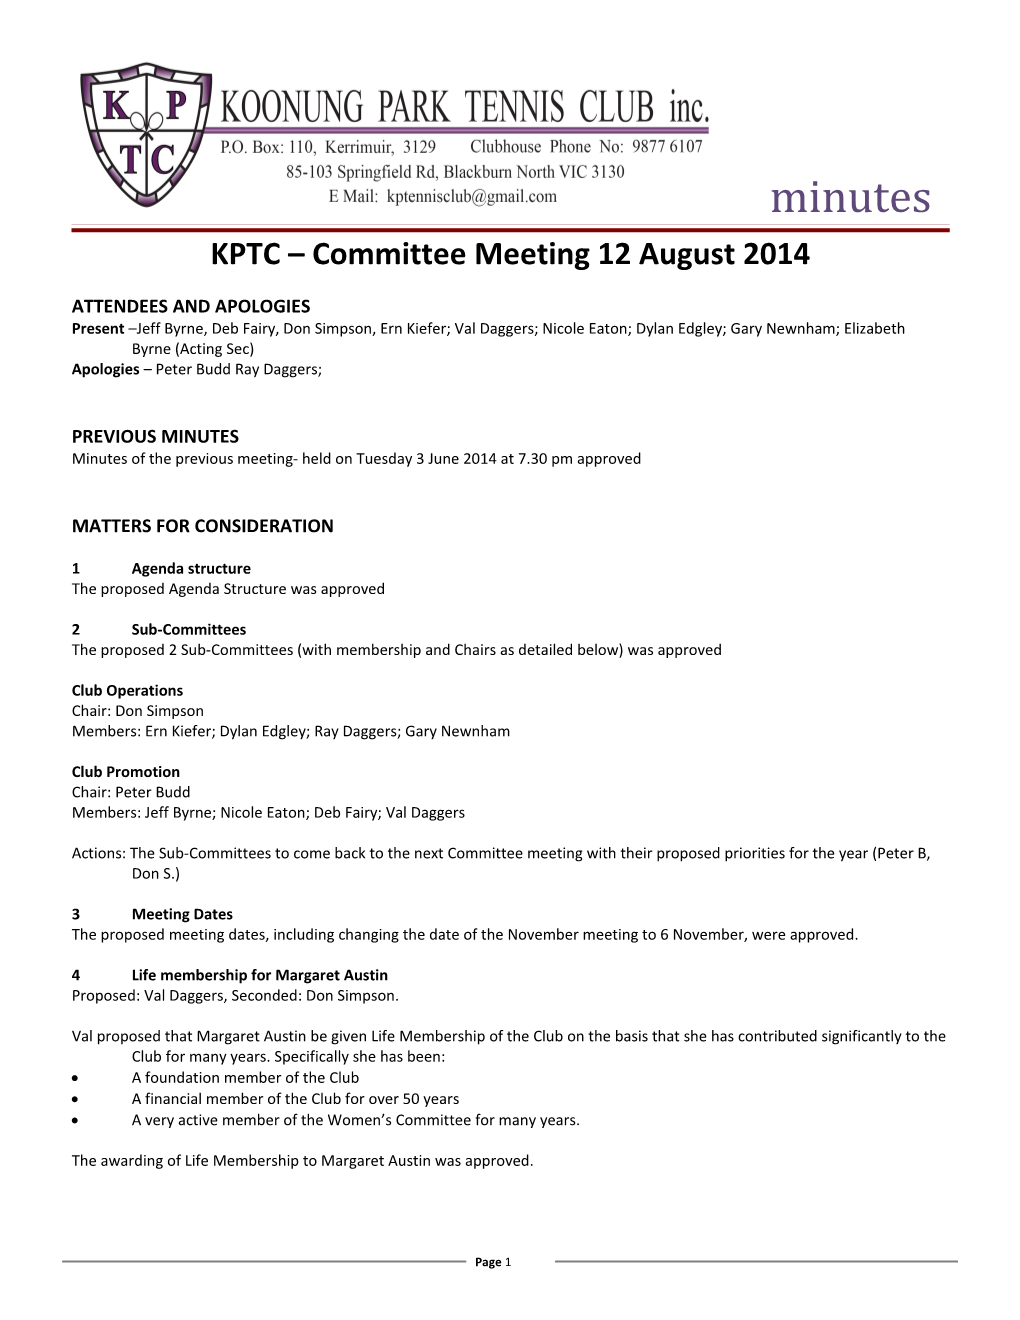 KPTC Committee Meeting 12 August 2014